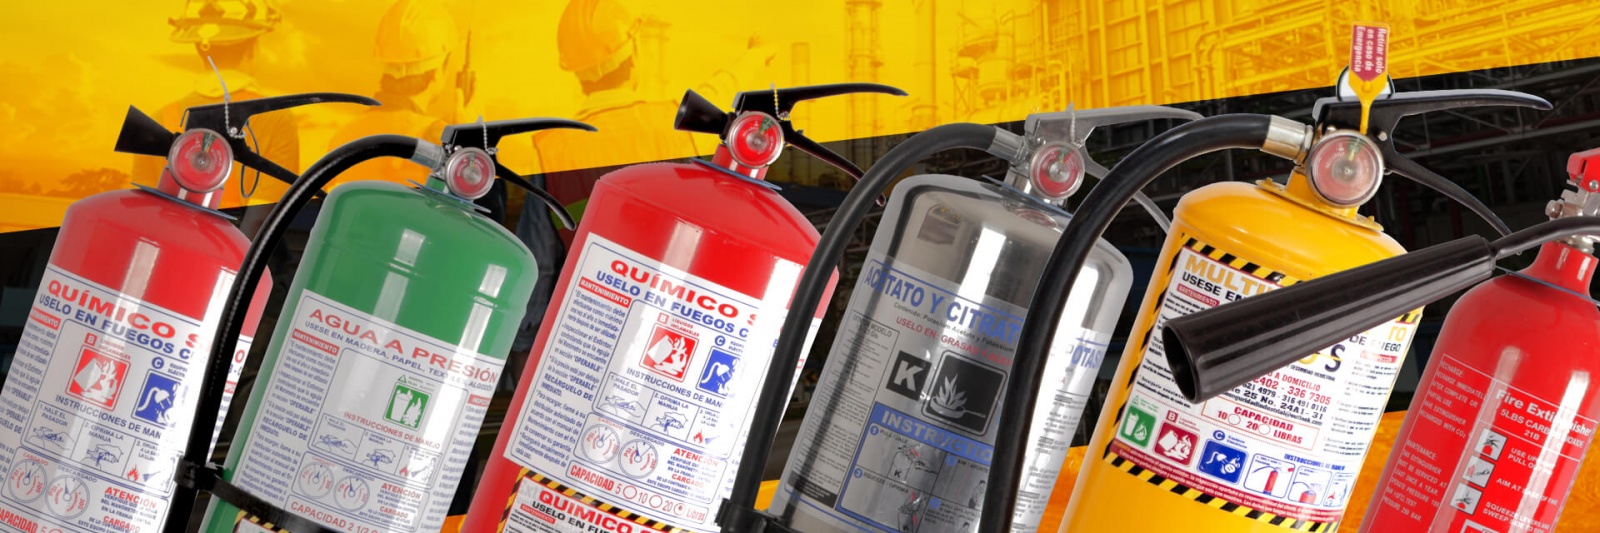 EXTINTOR CO2 DIÓXIDO CARBONO IMPLESEG 15 LBS - Implementos de seguridad  industrial y bomberil, extintores